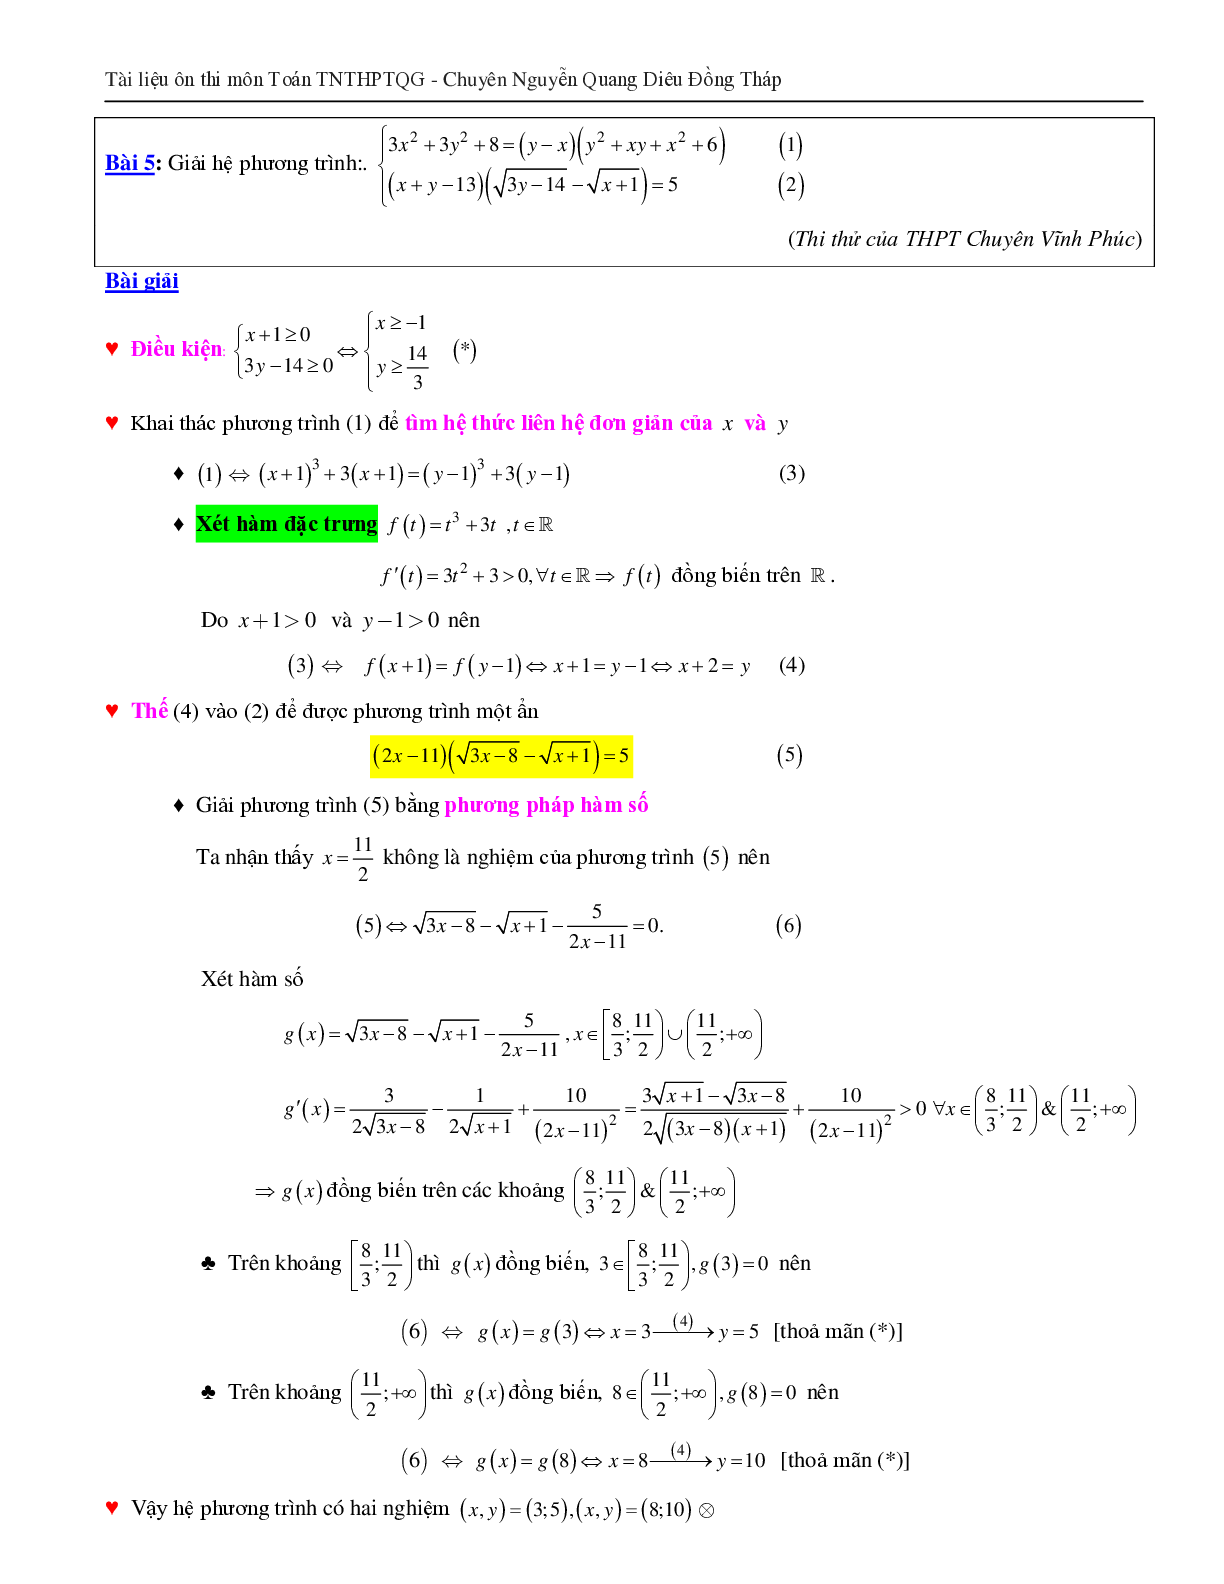 Giải hệ phương trình bằng phương pháp hàm số (trang 6)